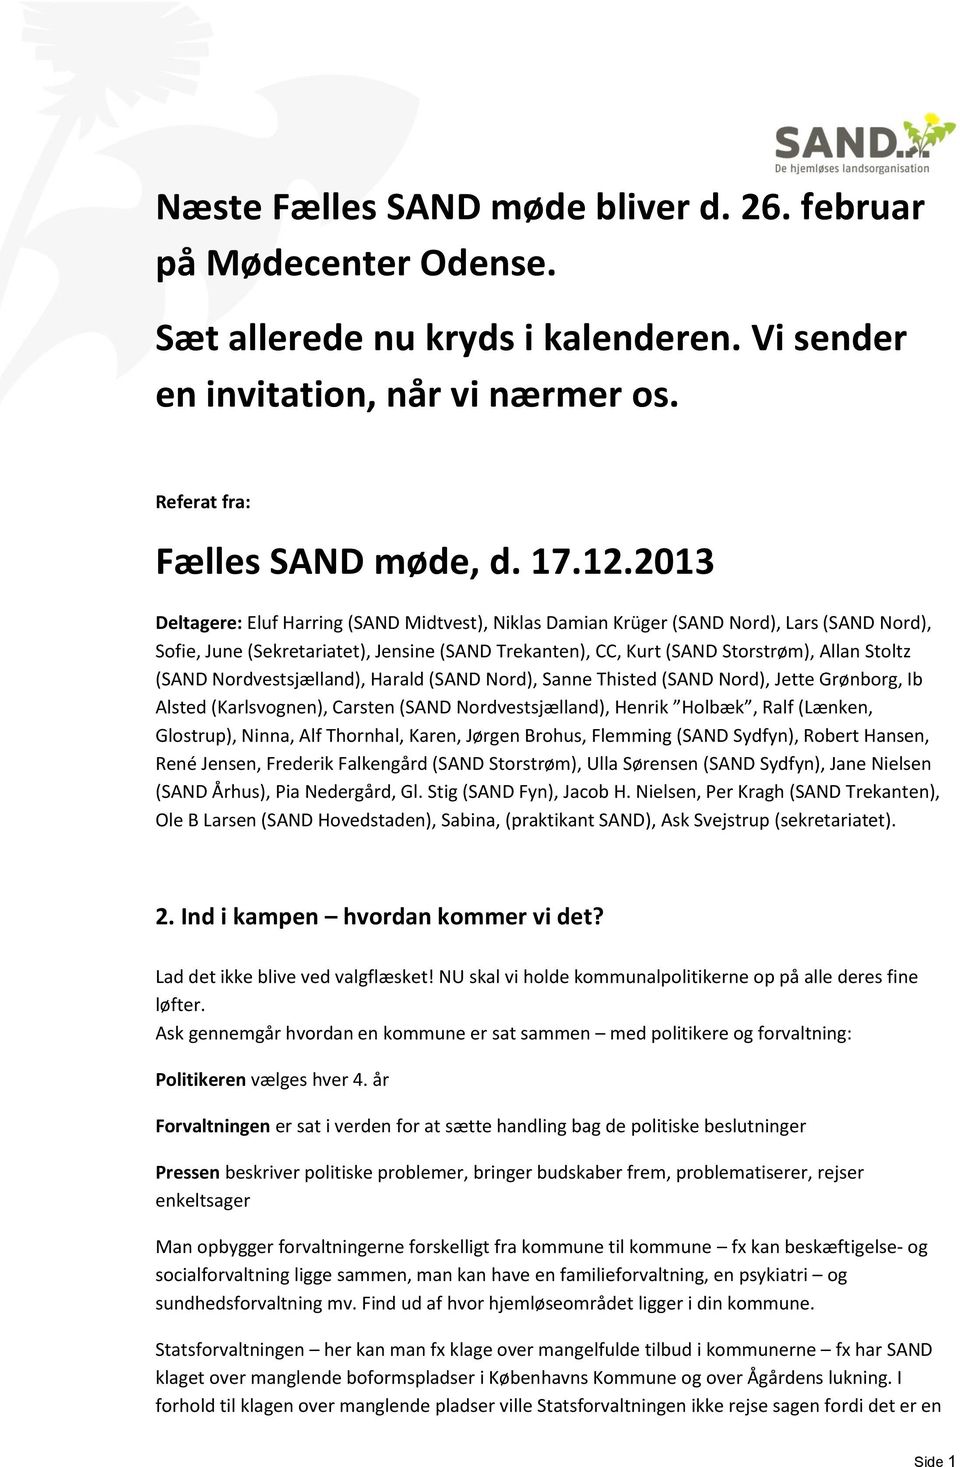 Nordvestsjælland), Harald (SAND Nord), Sanne Thisted (SAND Nord), Jette Grønborg, Ib Alsted (Karlsvognen), Carsten (SAND Nordvestsjælland), Henrik Holbæk, Ralf (Lænken, Glostrup), Ninna, Alf